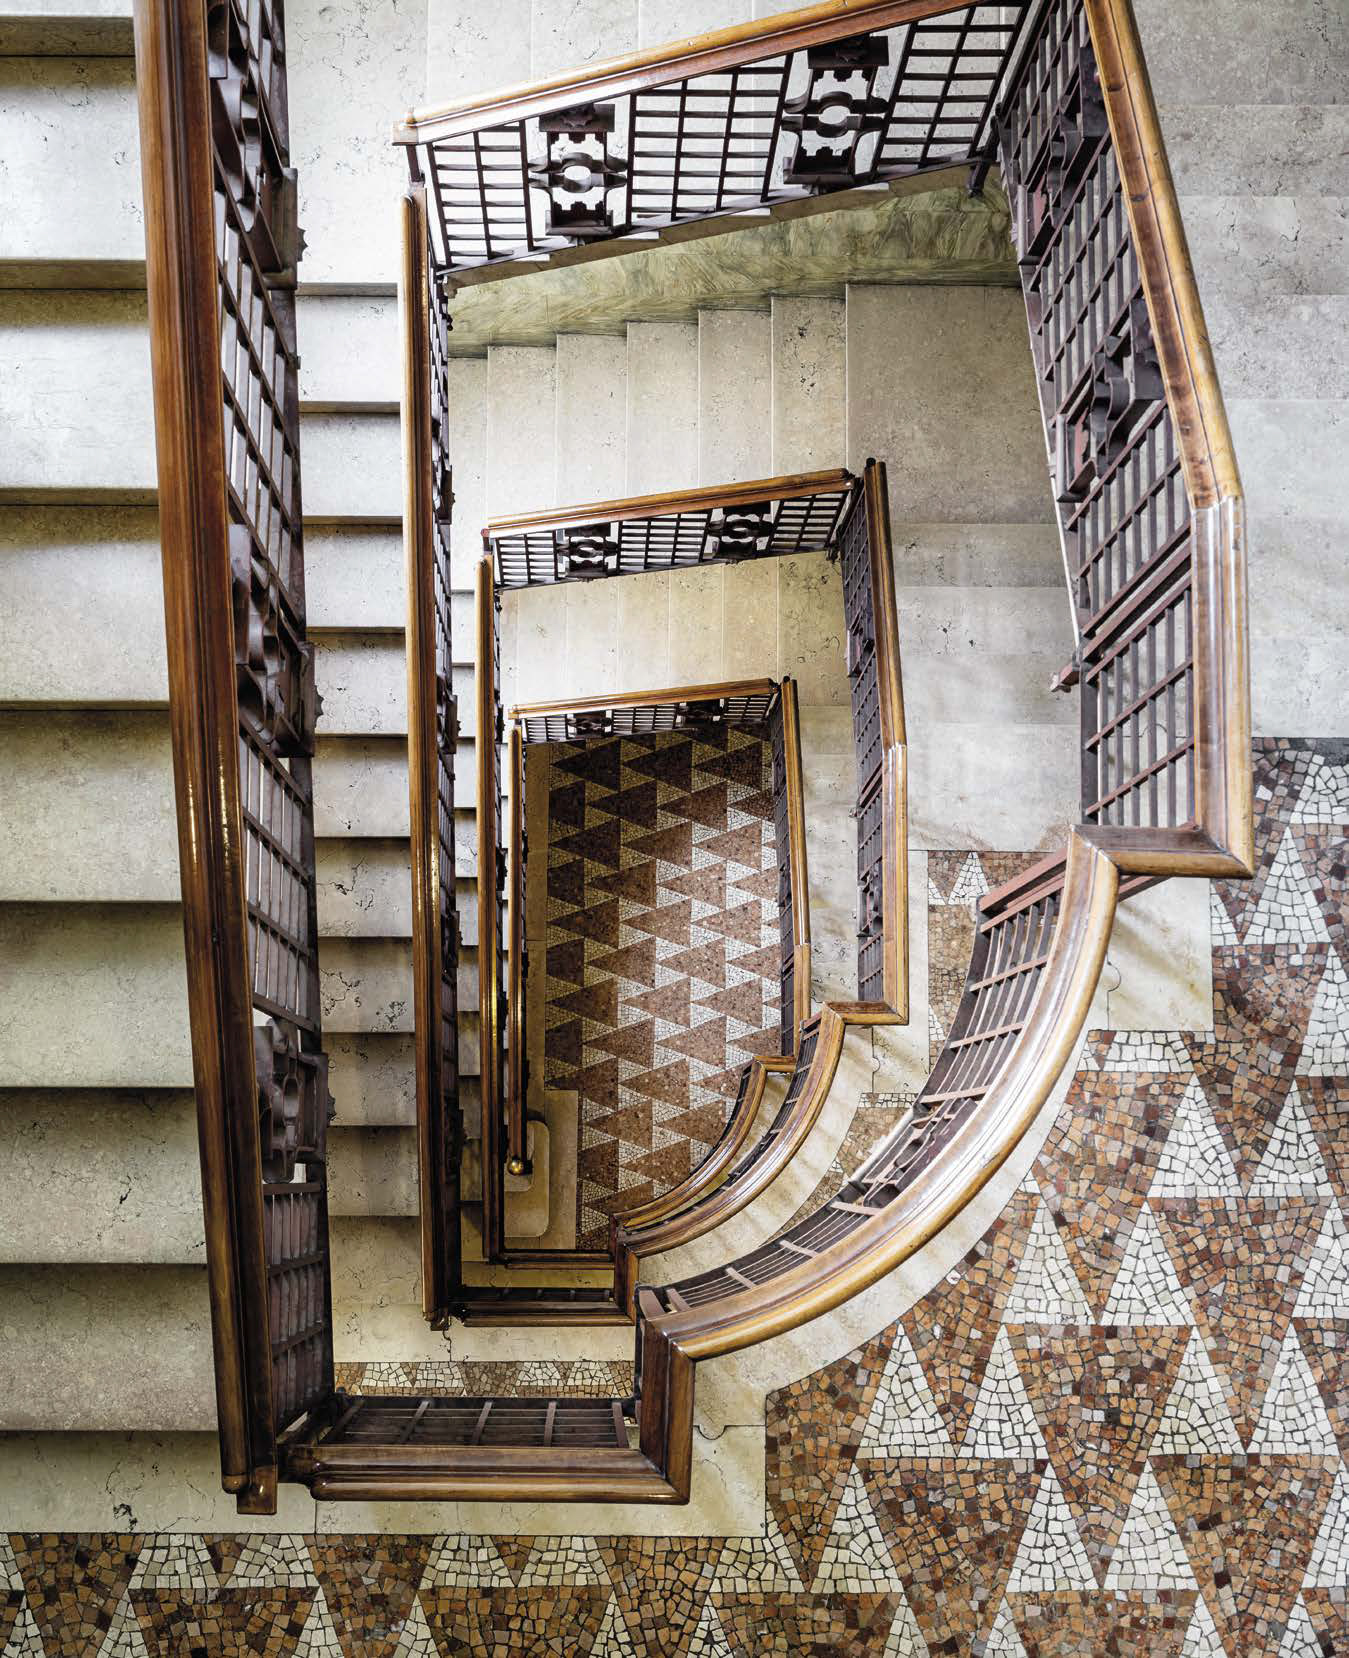 The geometric stairway in Piero Portaluppi’s Casa Boschi di Stefano ph. Lorenzo Pennati